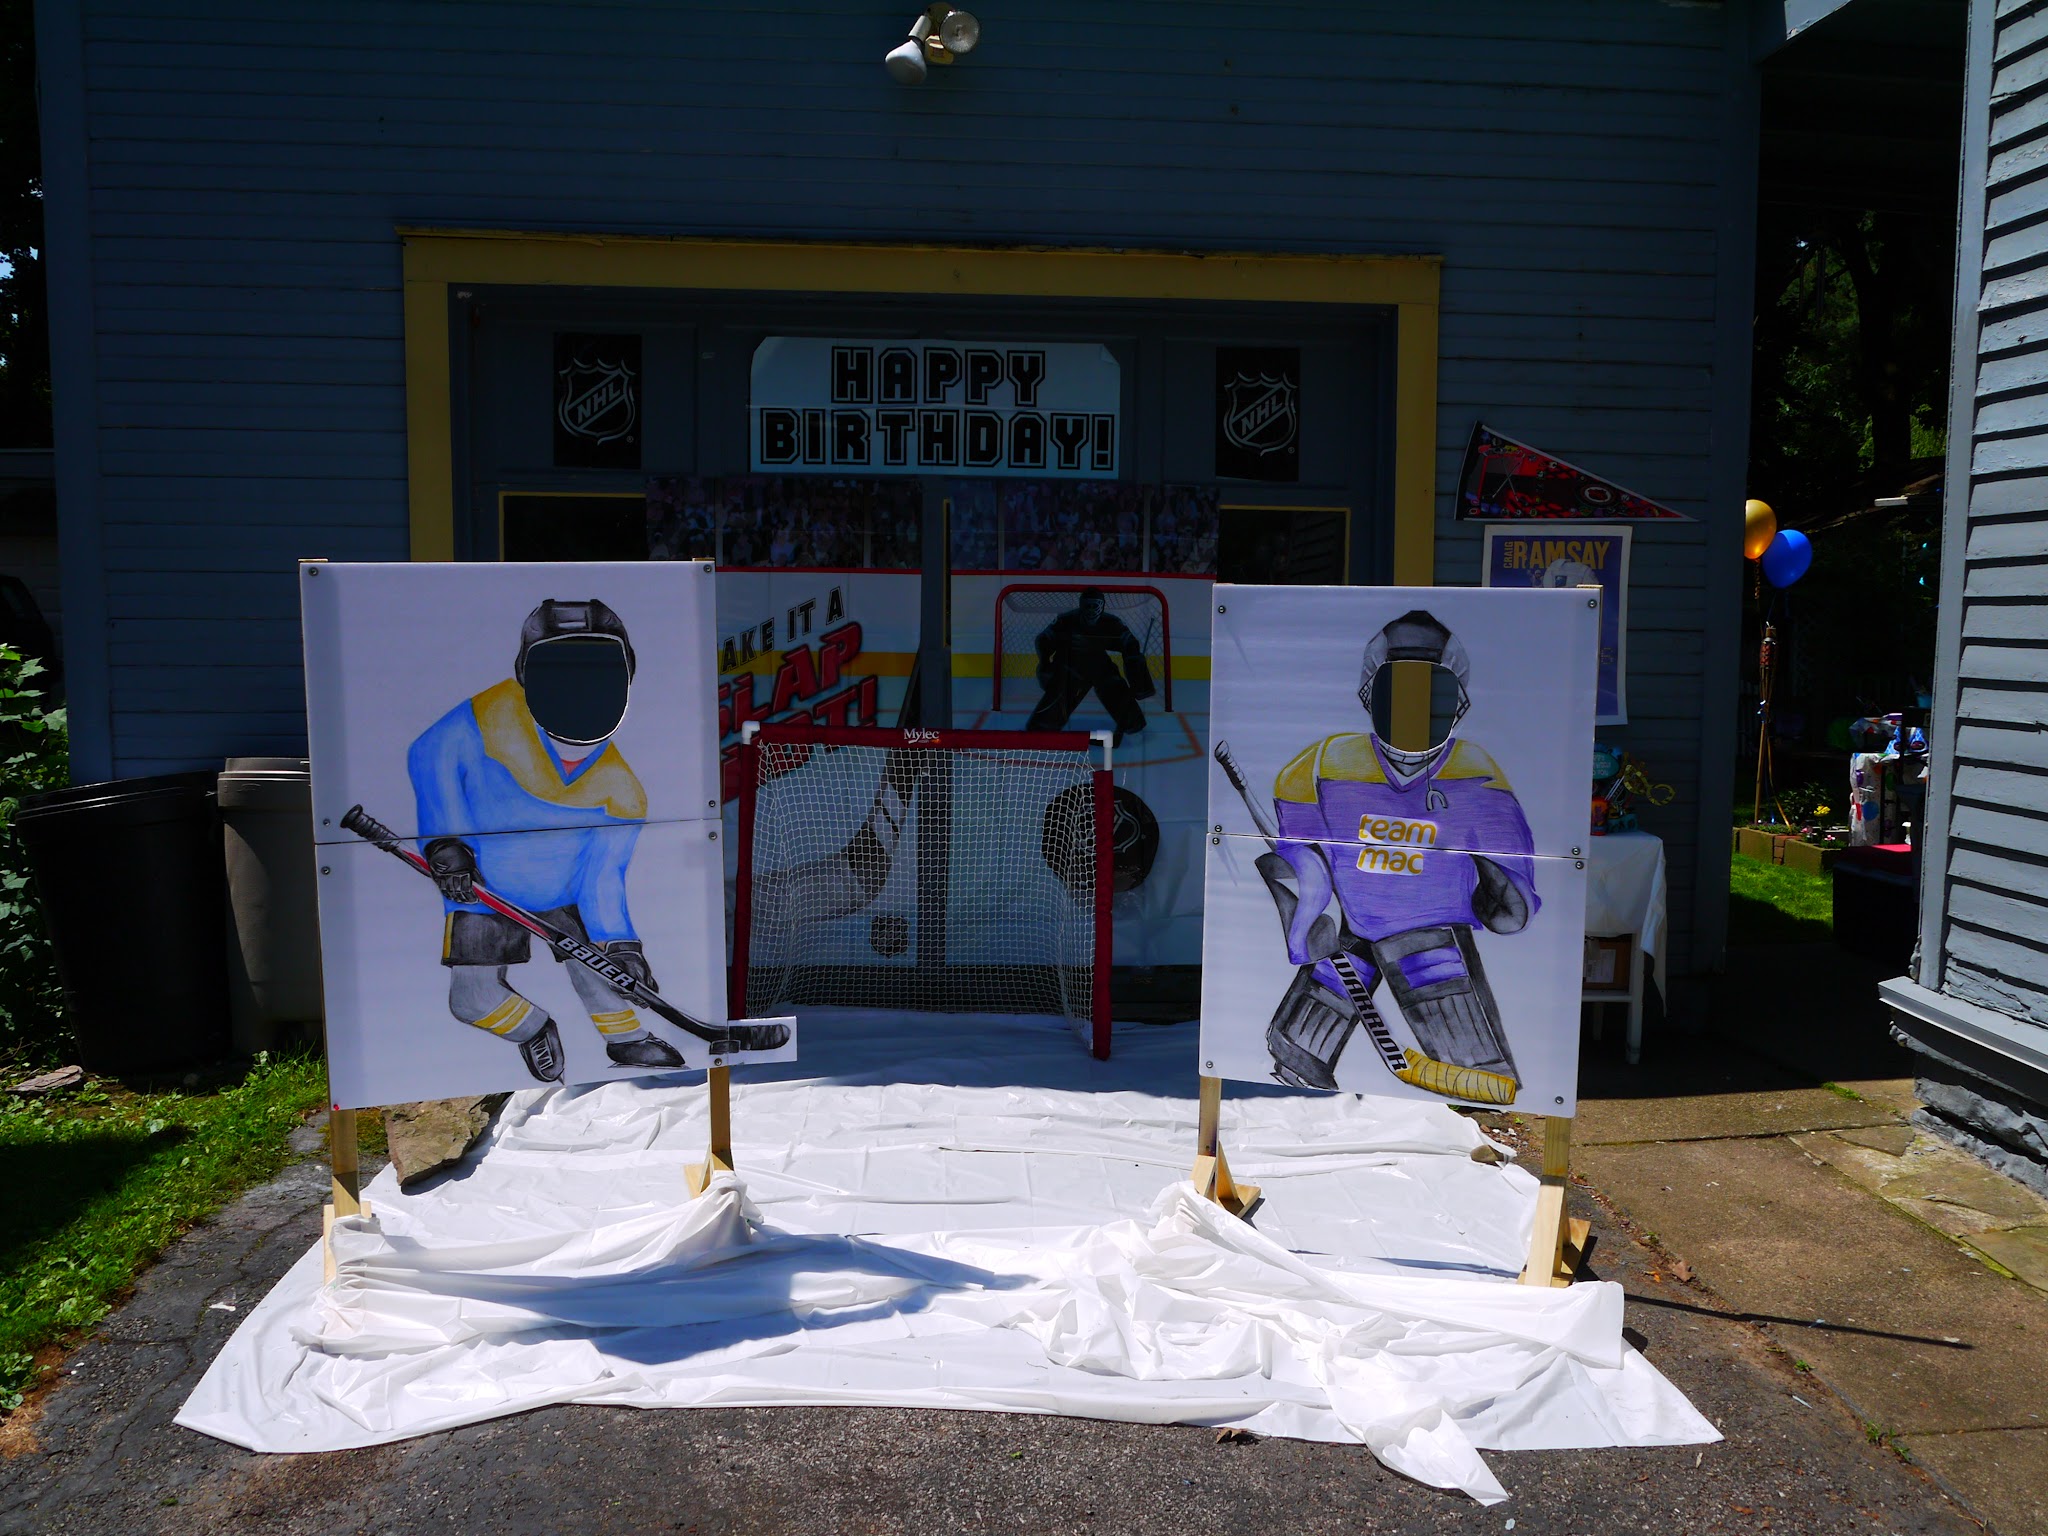 Hockey themed photo props